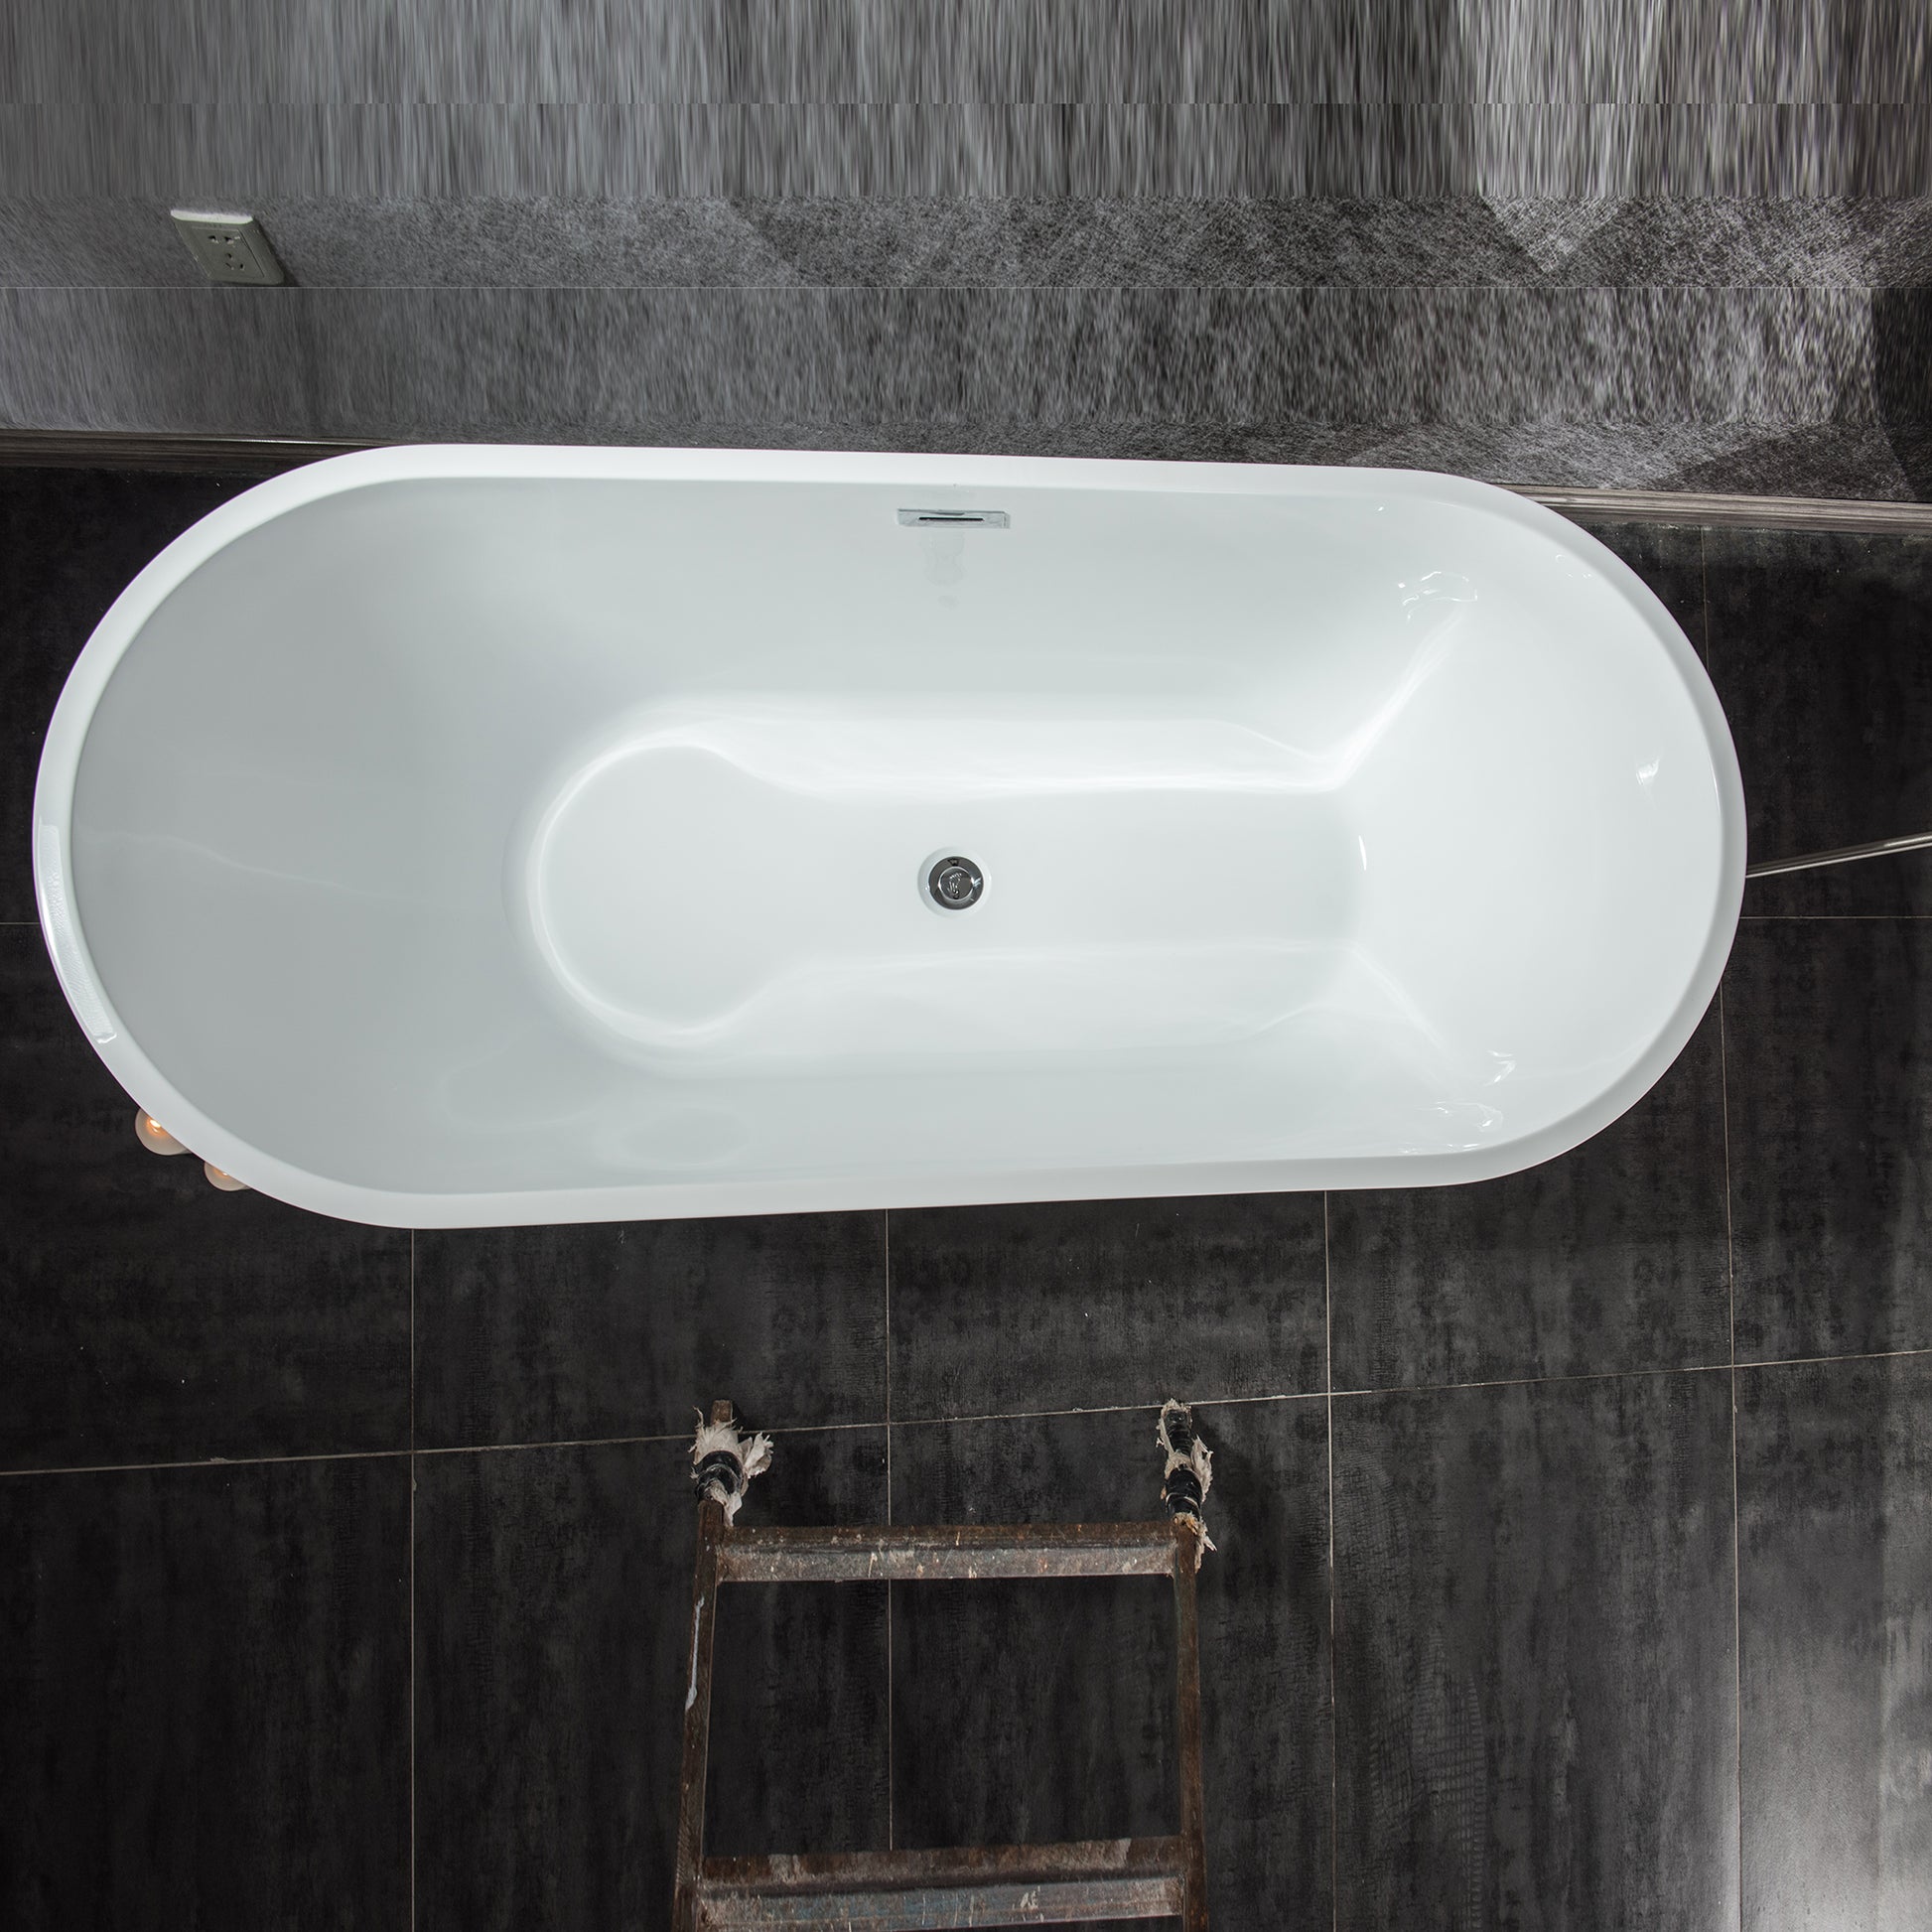 59" Freestanding Acrylic Soaking Bathtub With